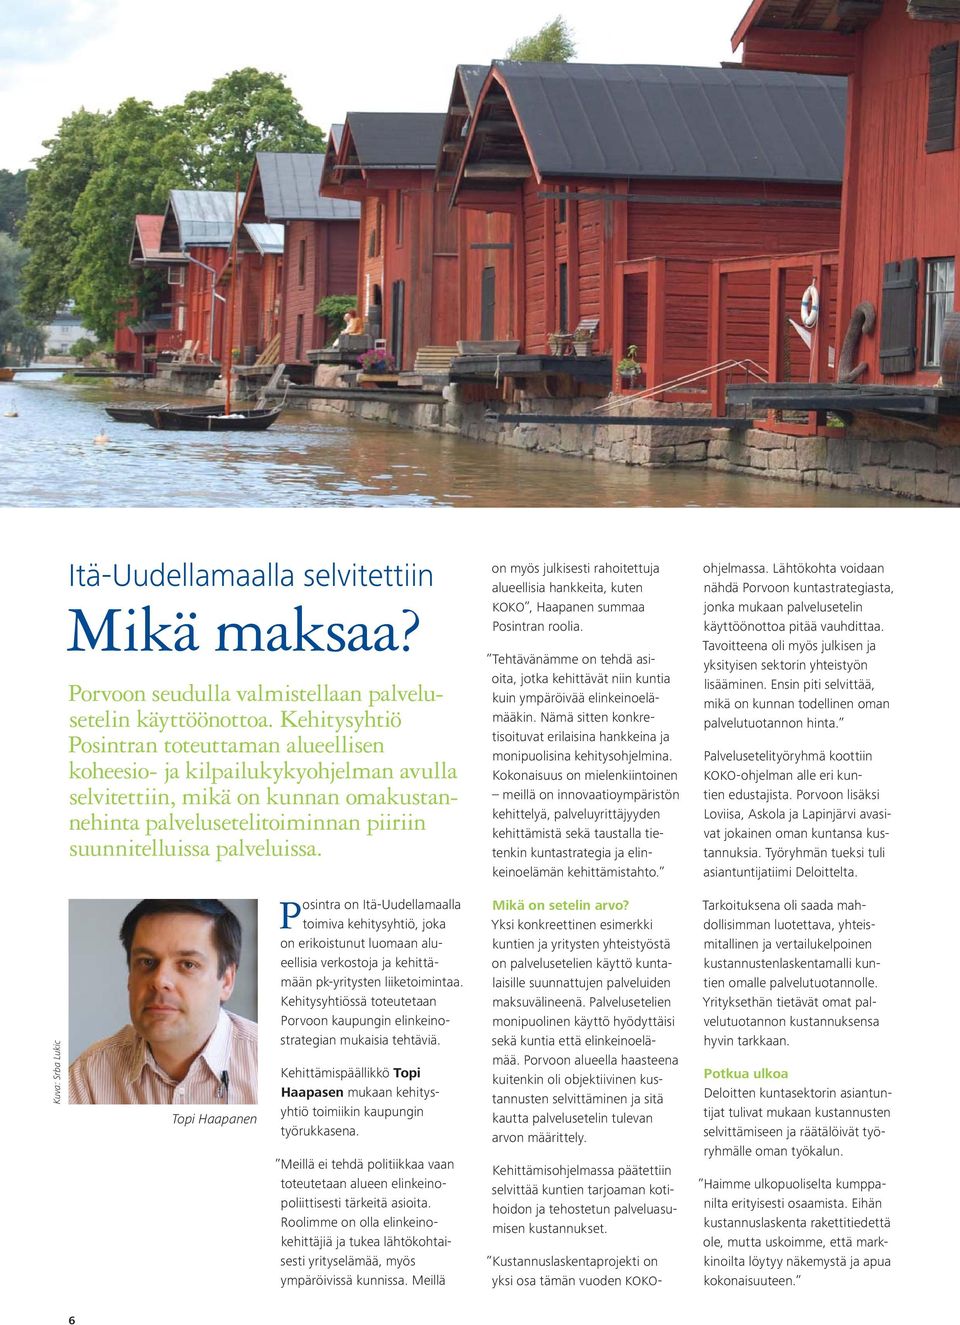 Topi Haapanen Posintra on Itä-Uudellamaalla toimiva kehitysyhtiö, joka on erikoistunut luomaan alueellisia verkostoja ja kehittämään pk-yritysten liiketoimintaa.